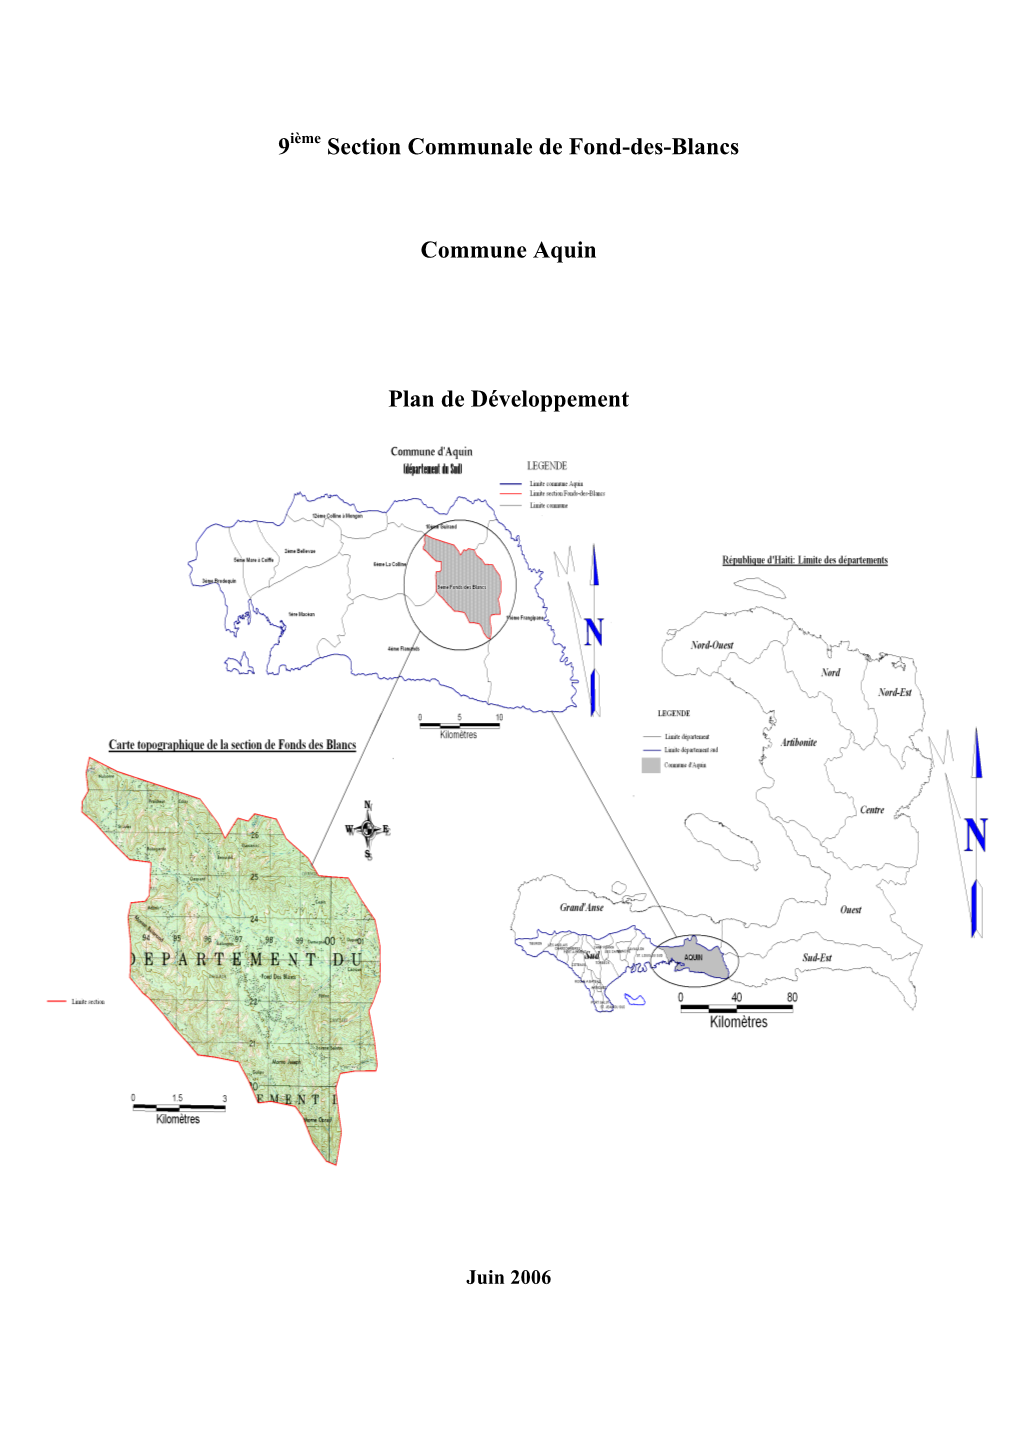 9Ième Section Communale De Fond-Des-Blancs Commune Aquin Plan De Développement